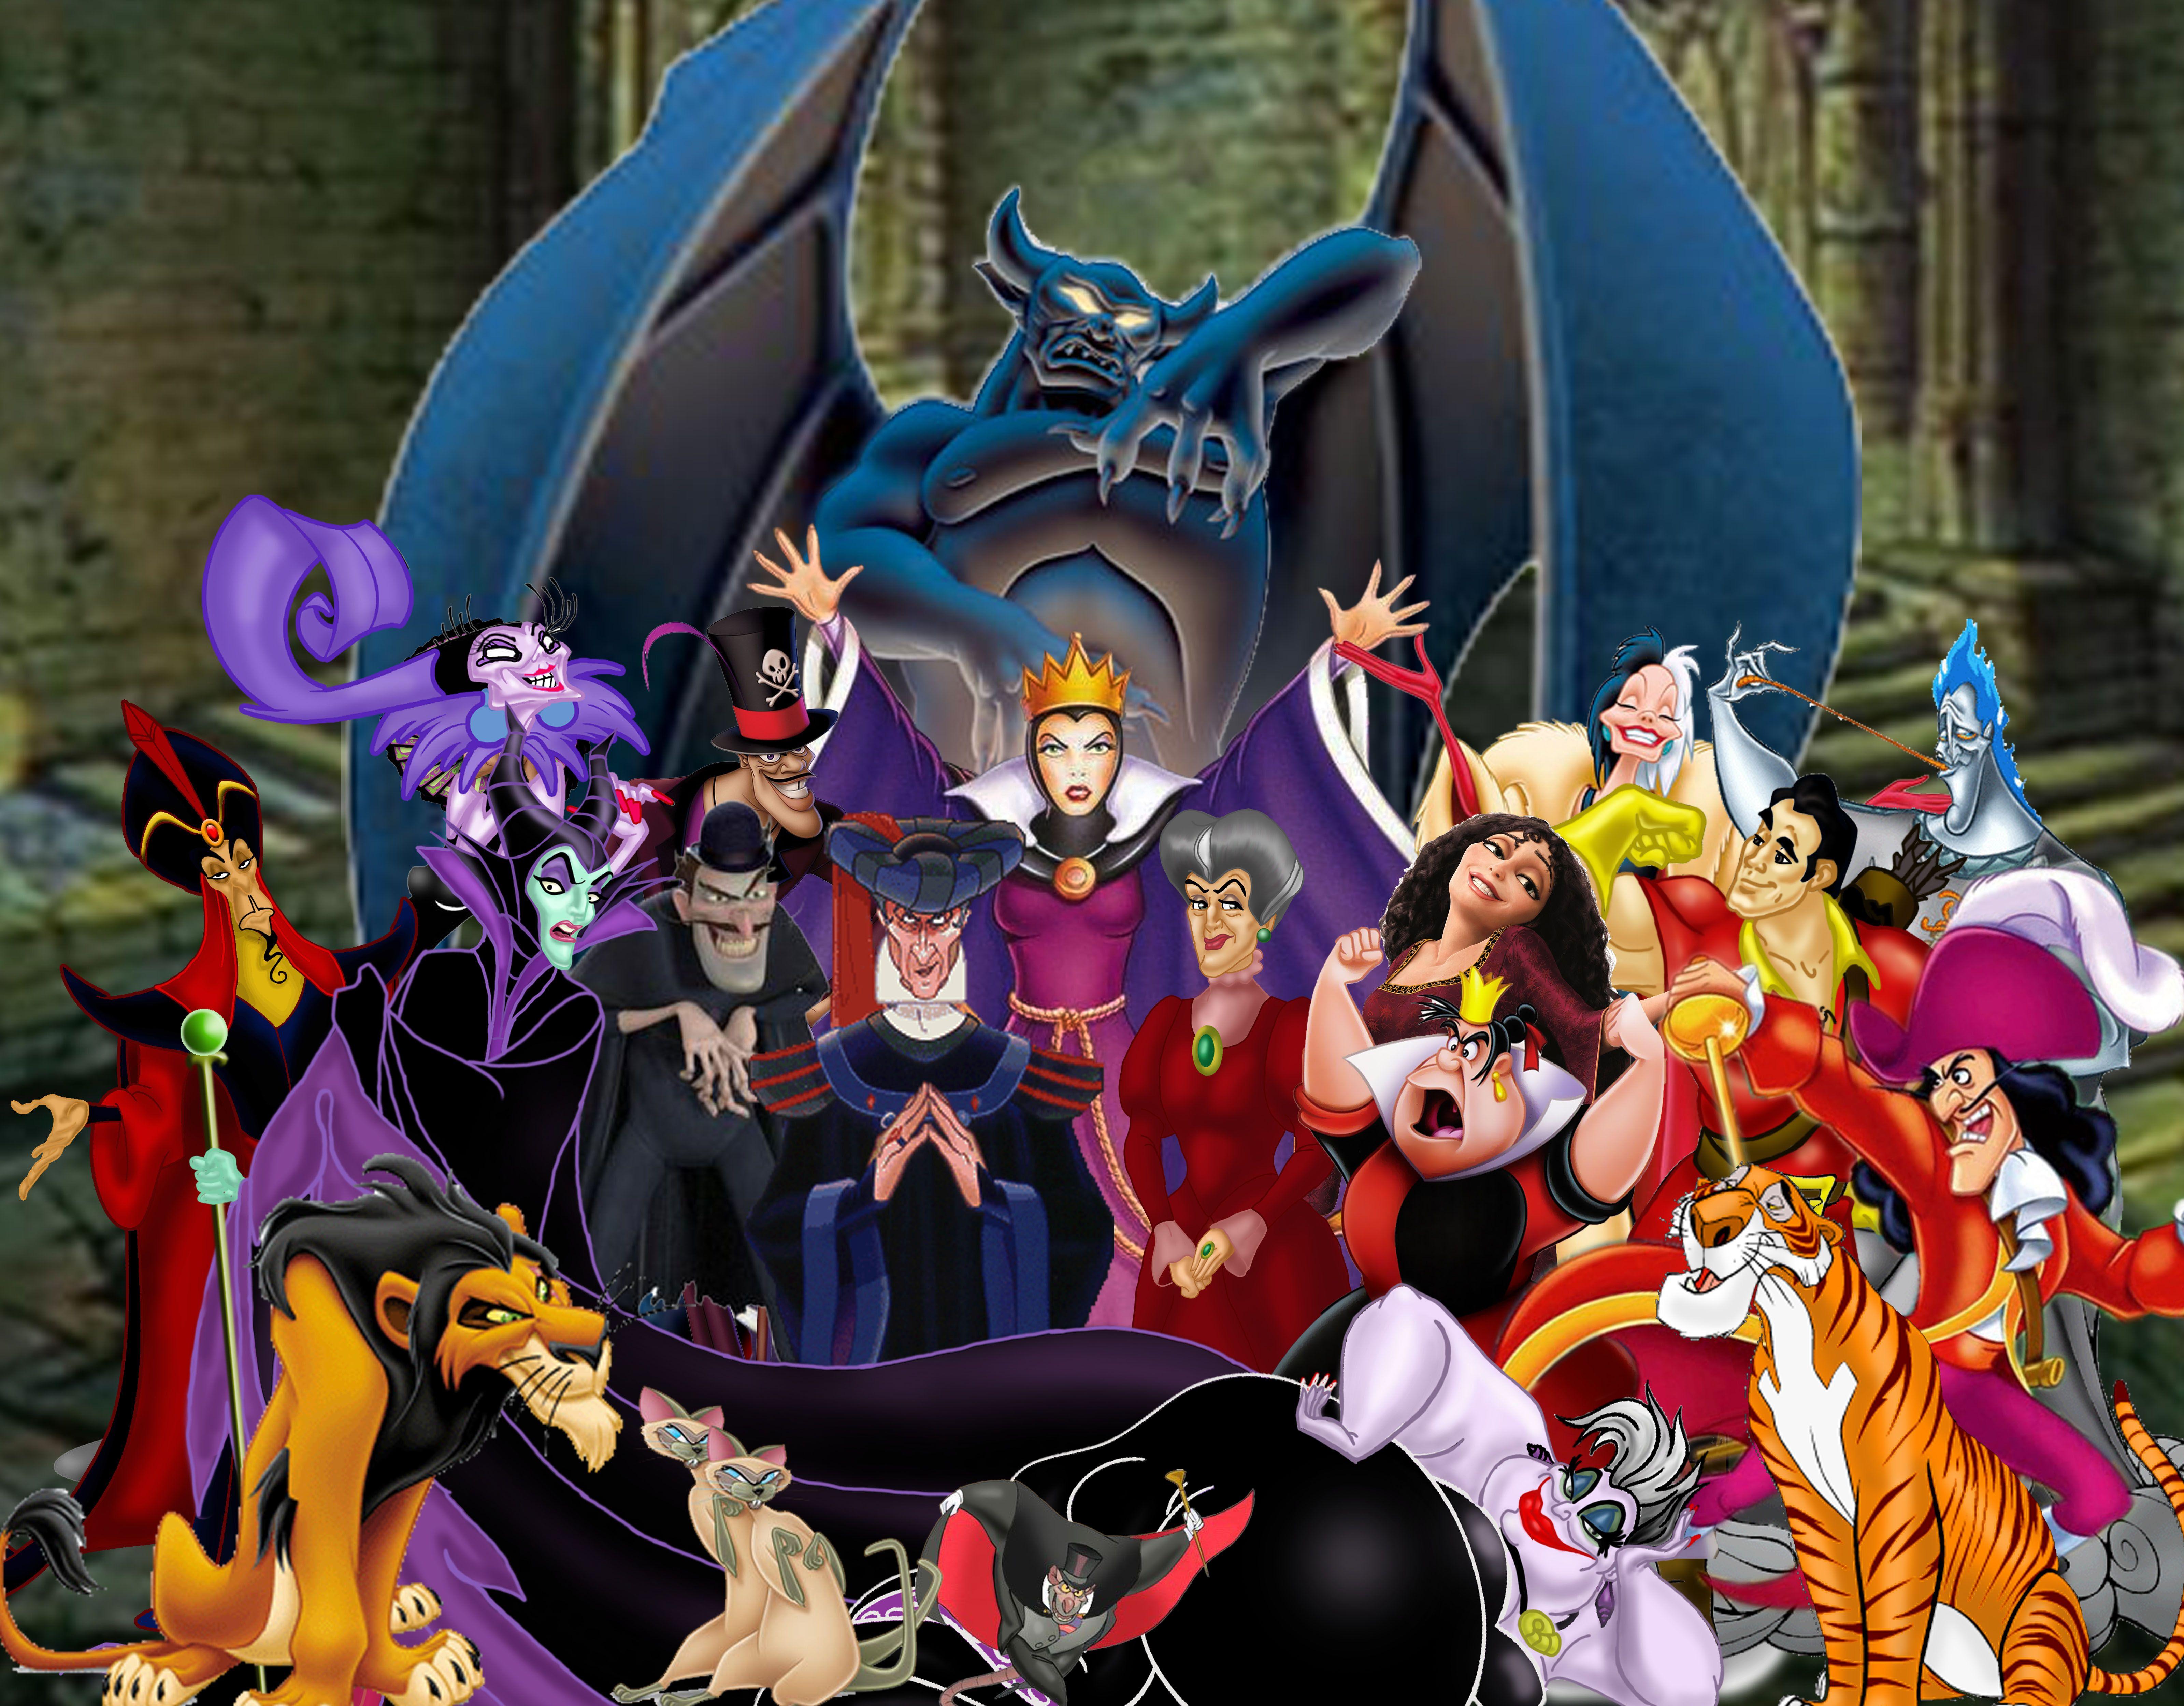 49 Disney Villains Wallpaper and Screensavers  WallpaperSafari